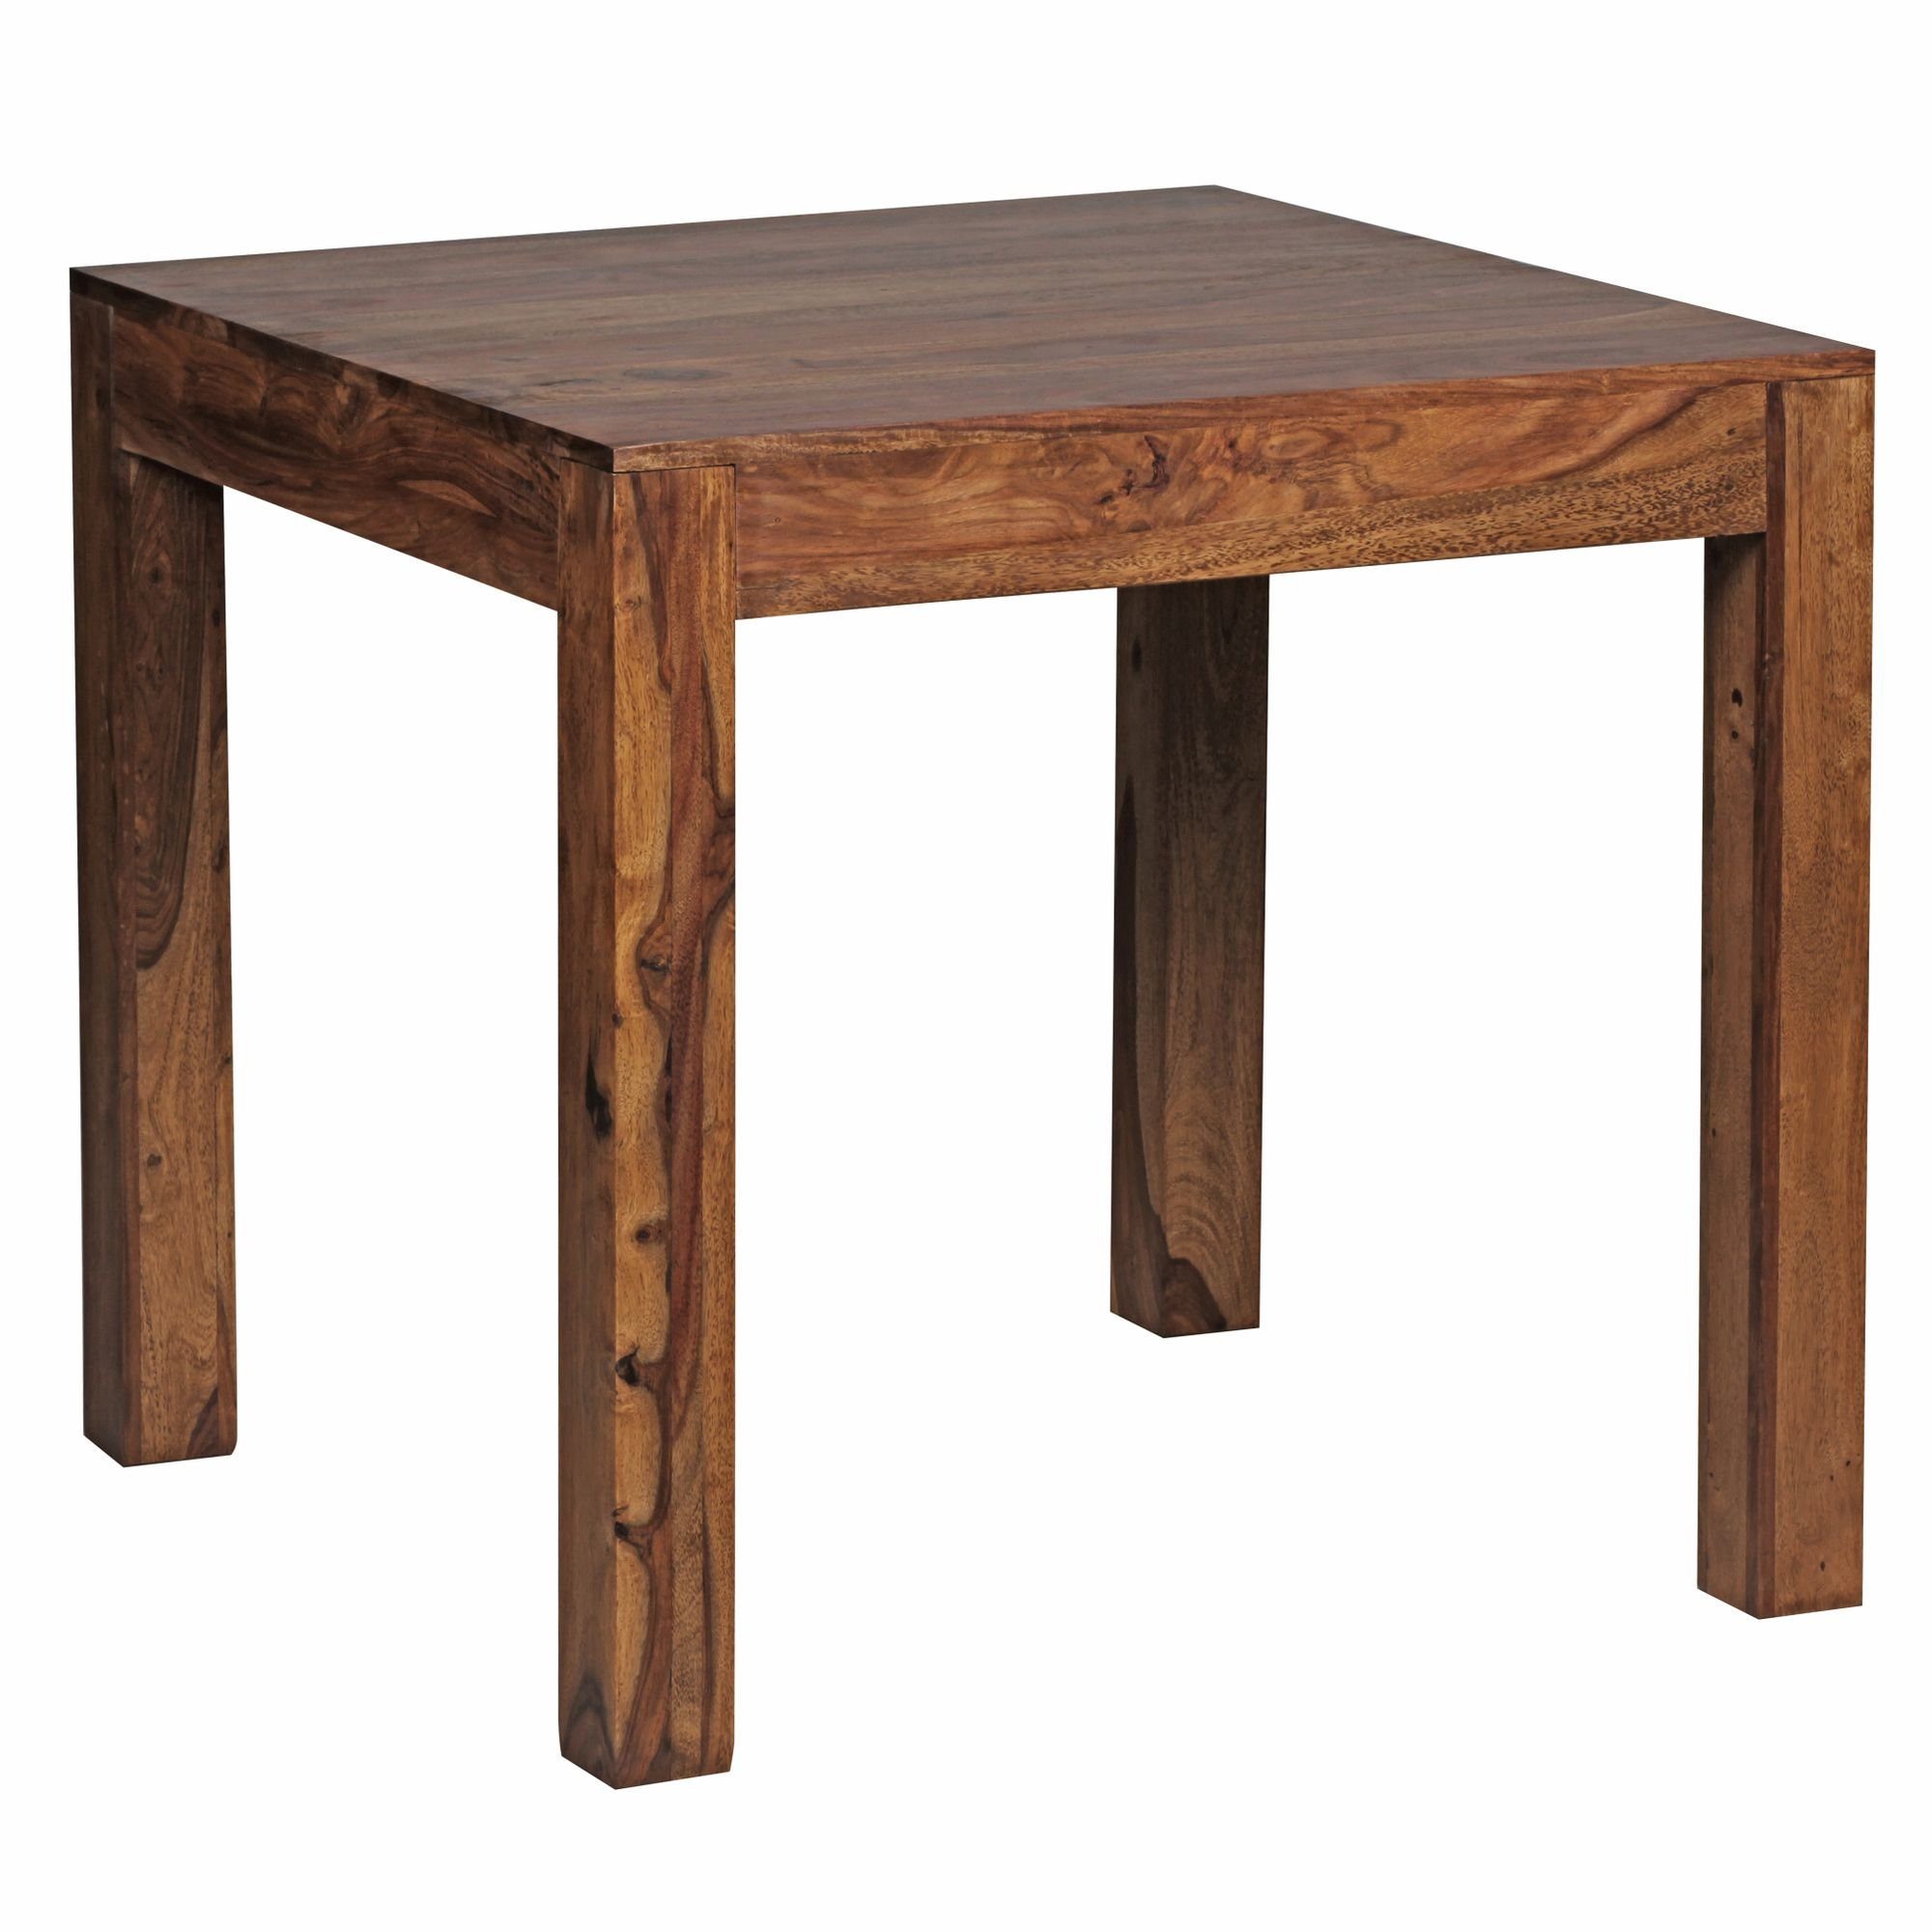 KADIMA DESIGN Esstisch Esszimmertisch Massiv – Quadratische Tischplatte mit Holzmaserung Braun | Braun | Braun